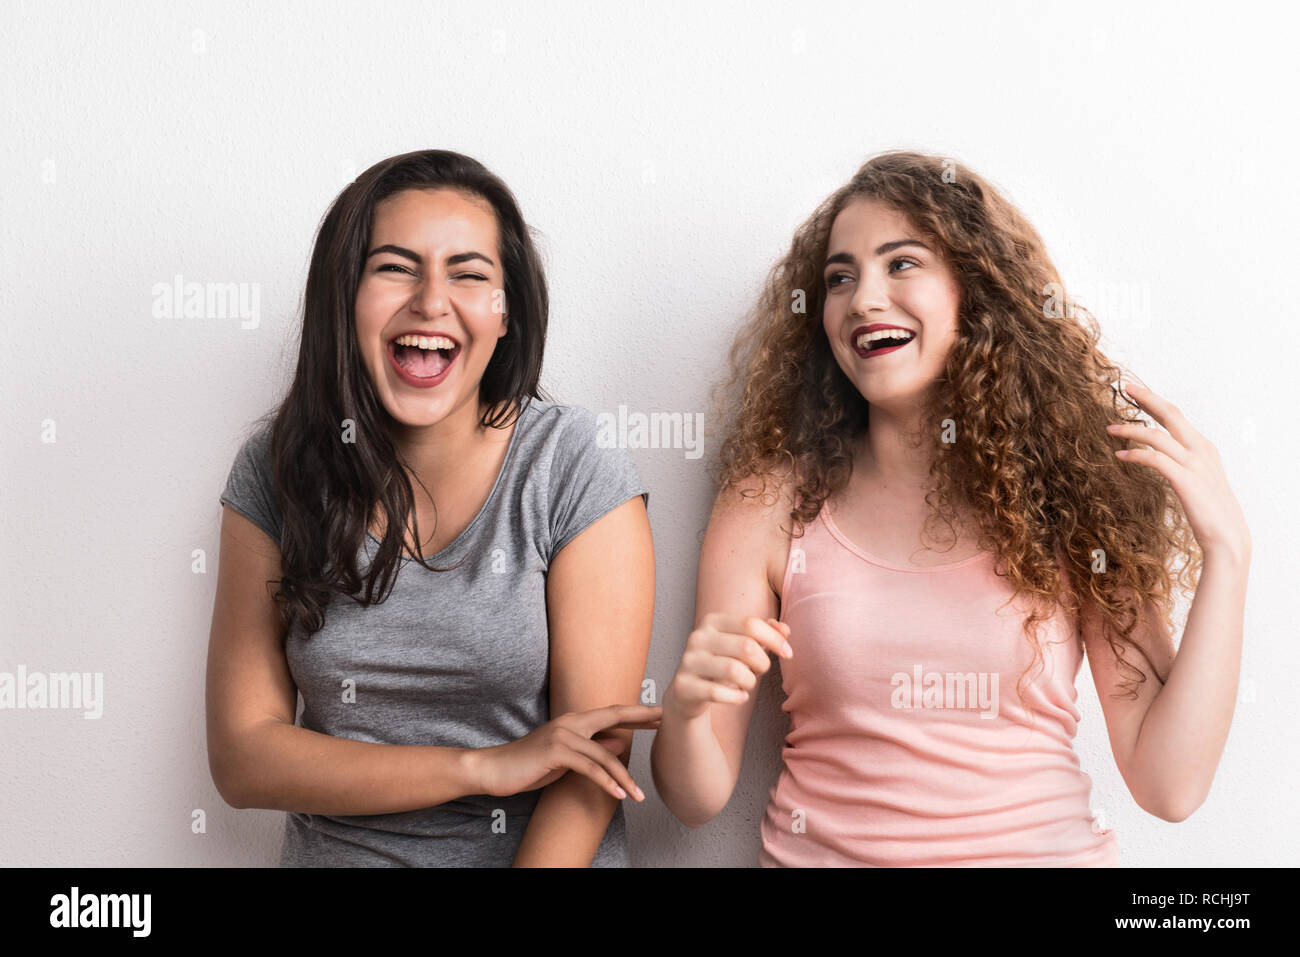 Young beautiful women in a studio, laughing. Stock Photo